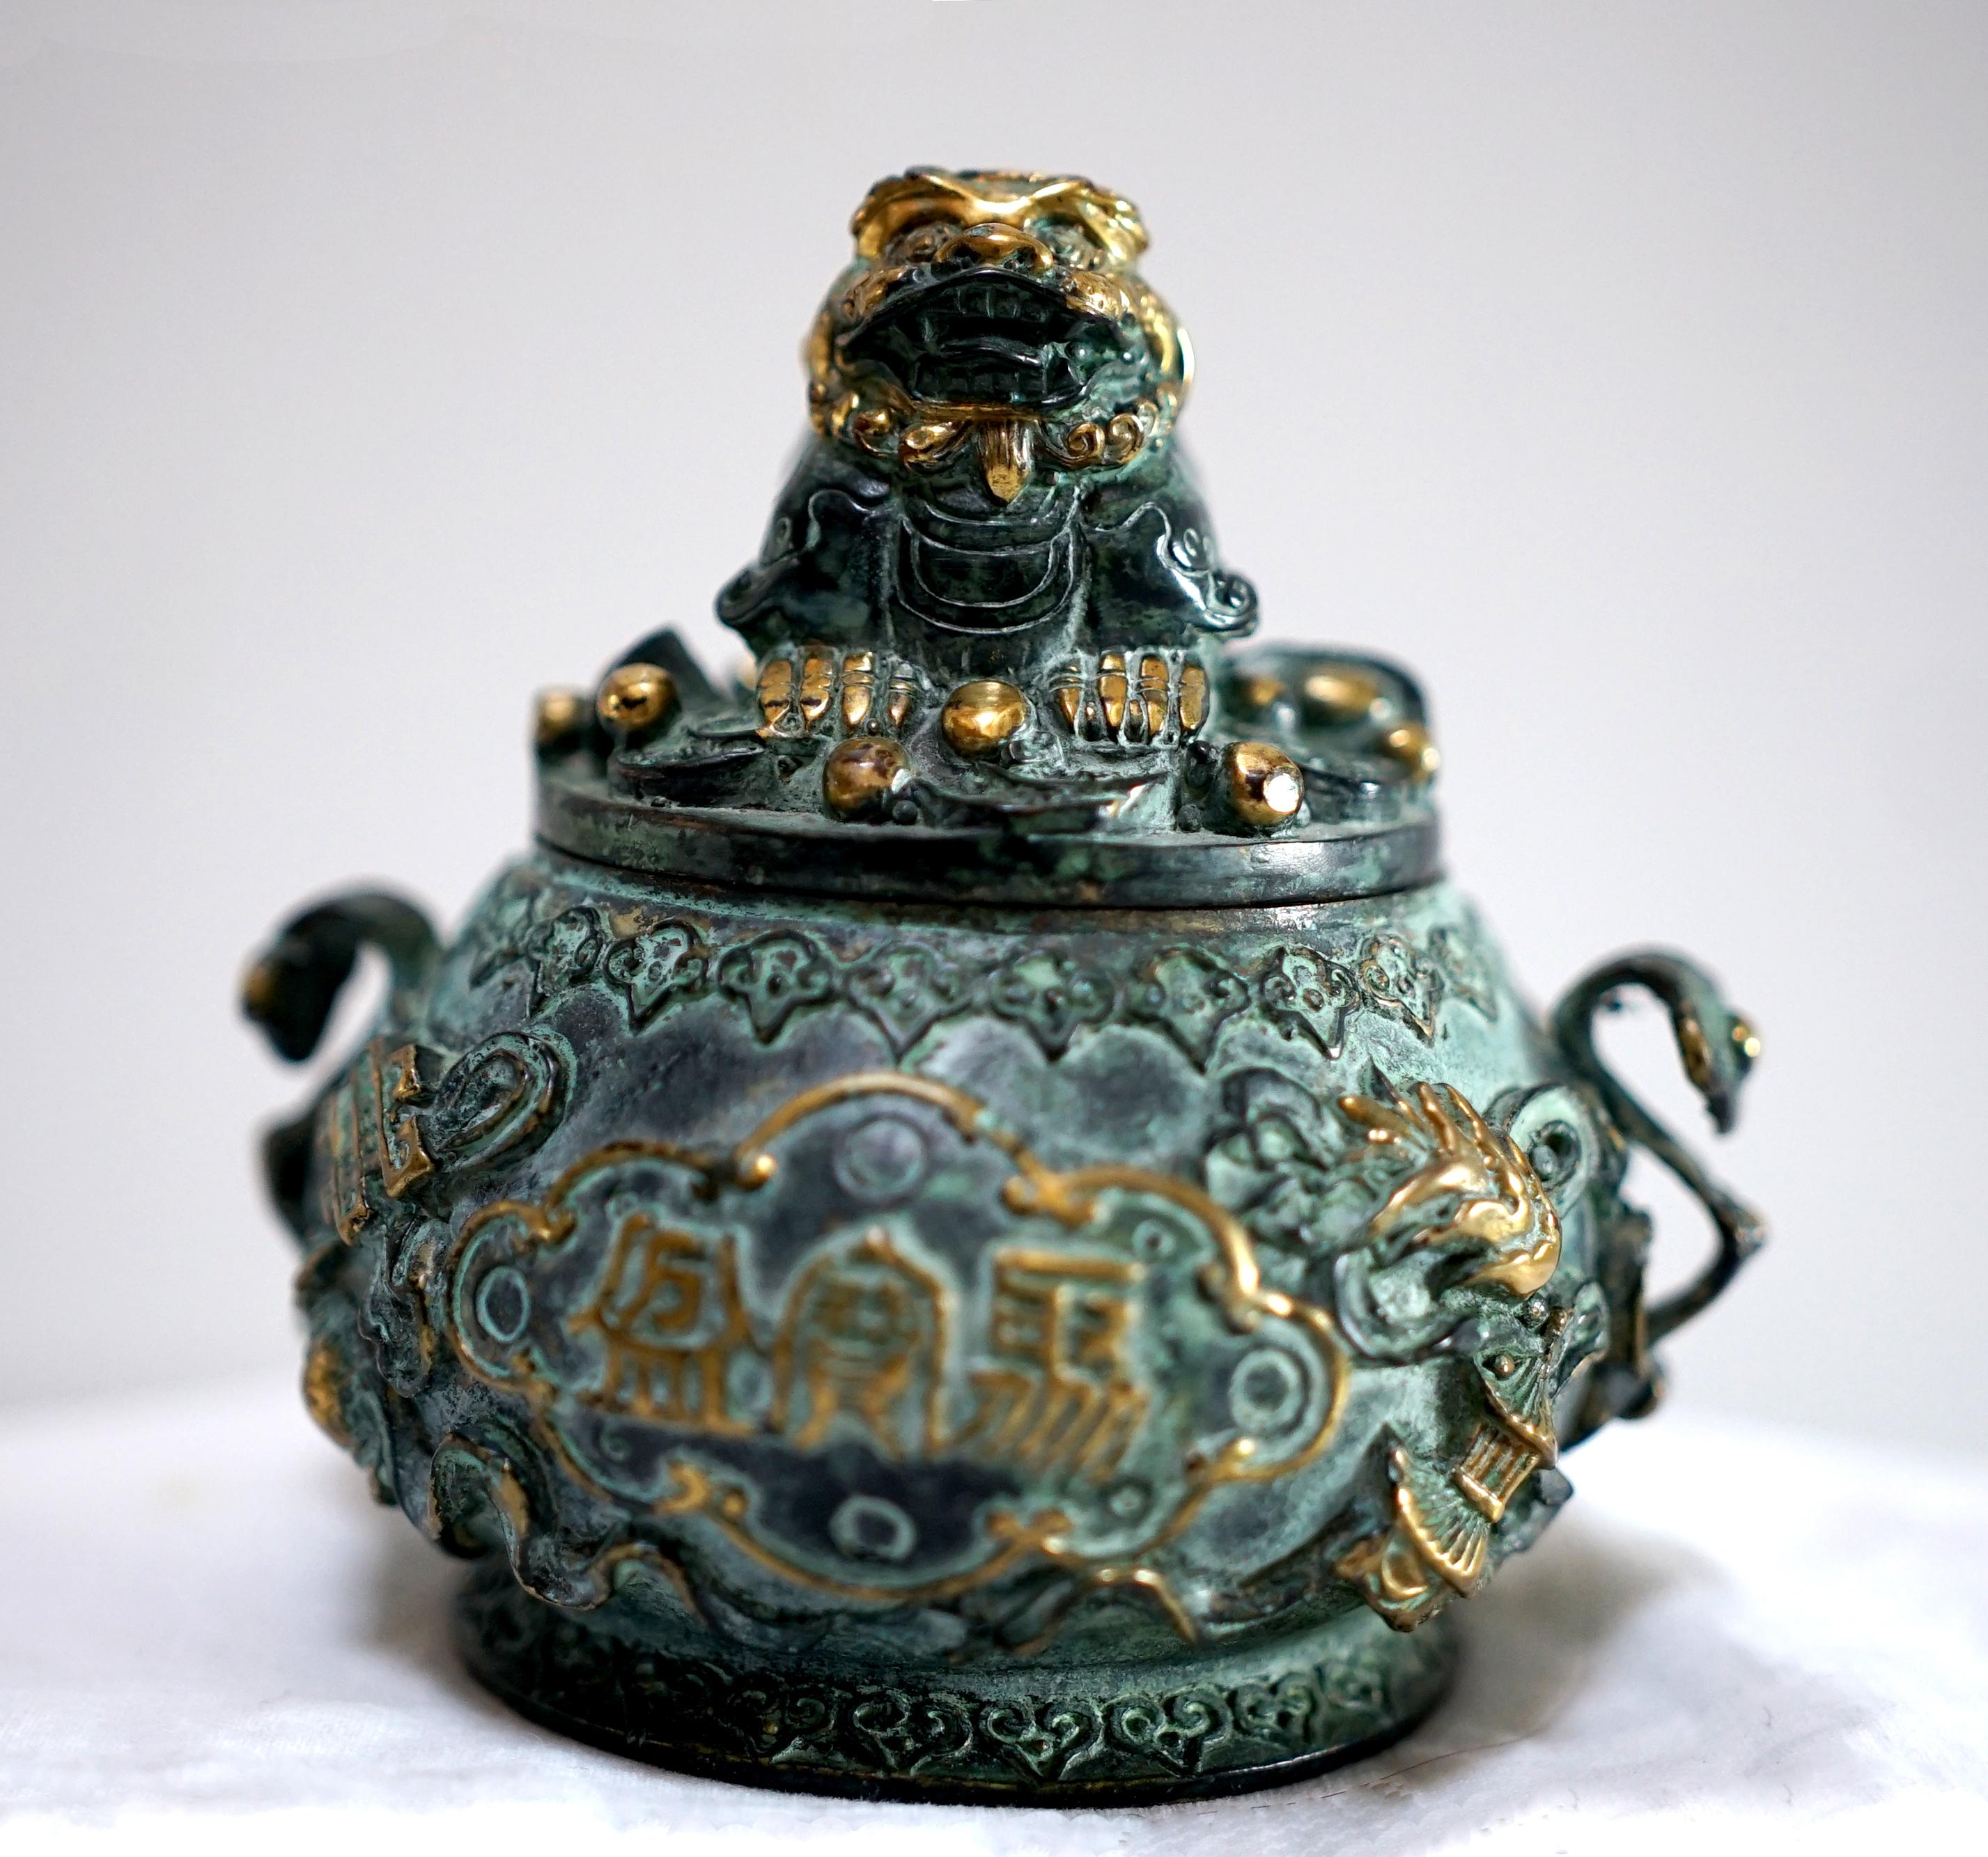 Bronze und vergoldete Details machen dieses chinesische Weihrauchfass zu einem schönen dekorativen Bronzeguss-Akzent.  Die Schale und der Deckel sind mit verschiedenen Objekten besetzt, kleinen und hellen wie einem Fisch, mit anderen